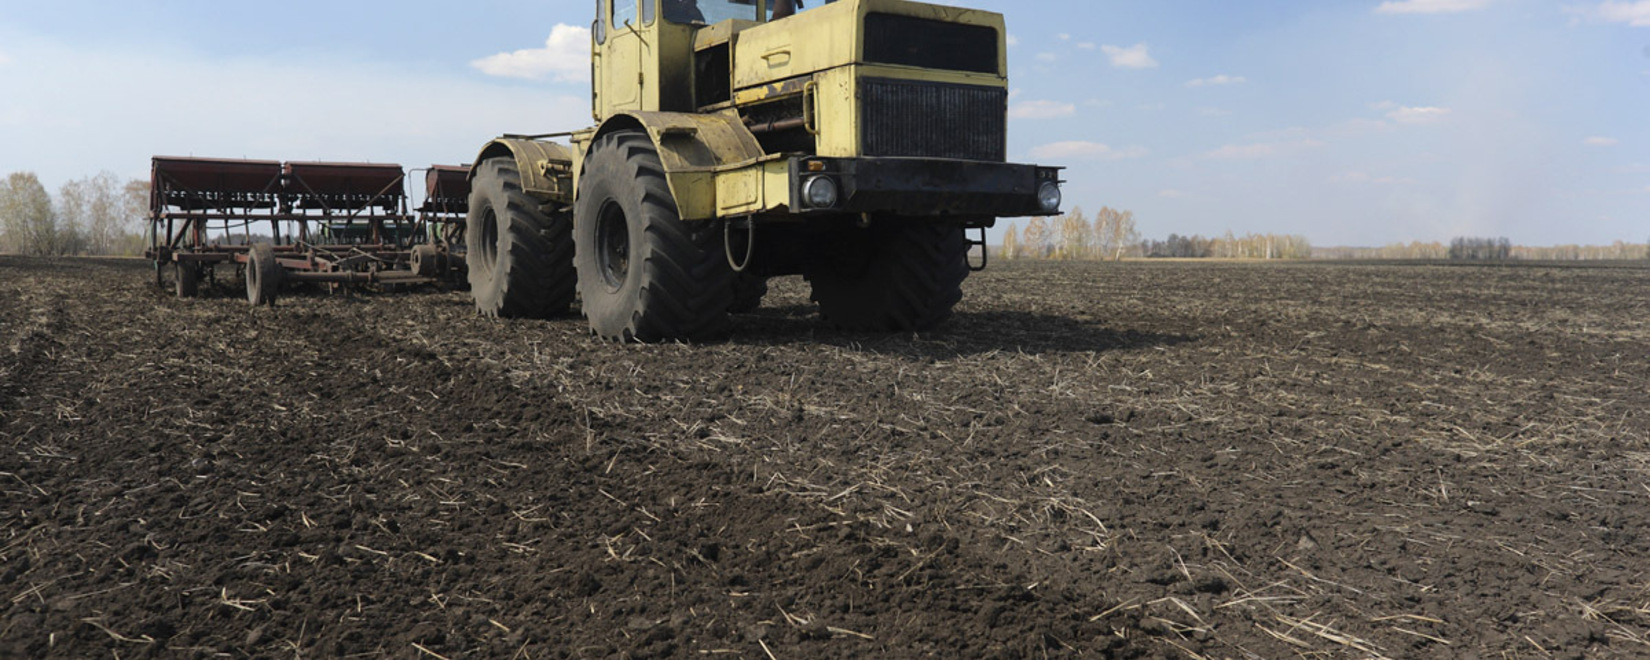 К весенне-полевым работам приступили хозяйства трех районов Томской области